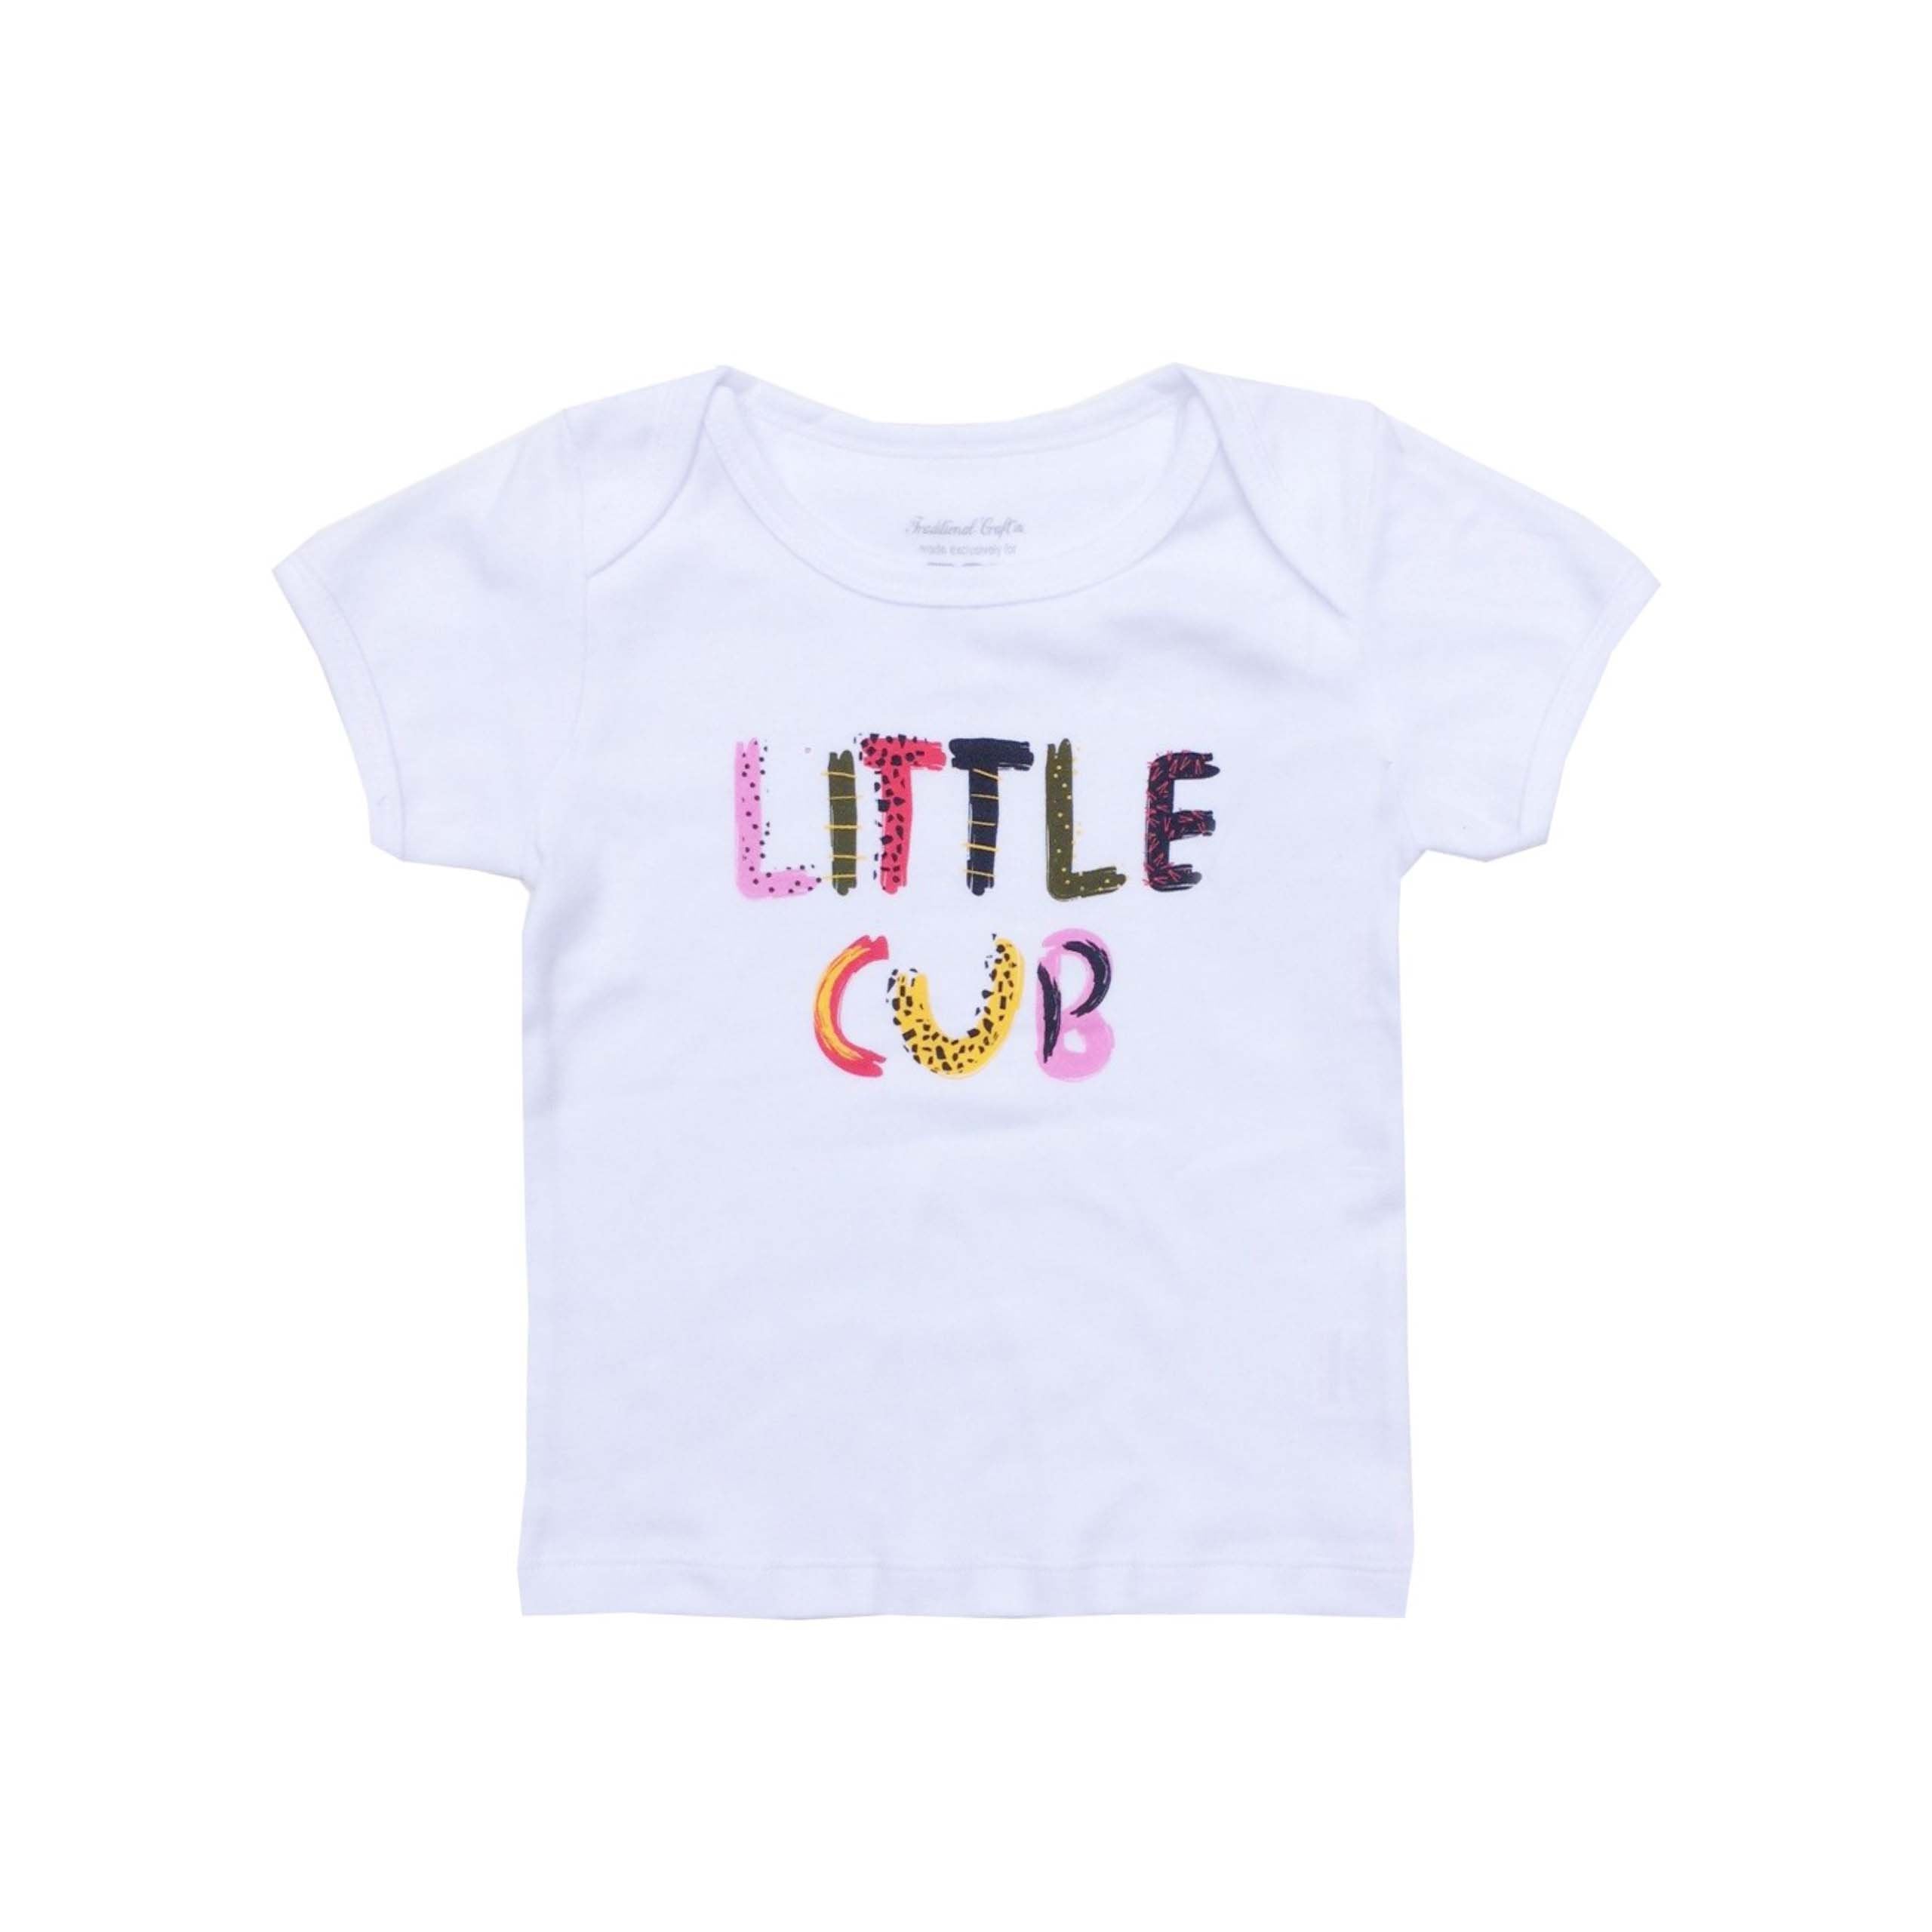 Little Cub Baby T-shirt, 3-6 Months